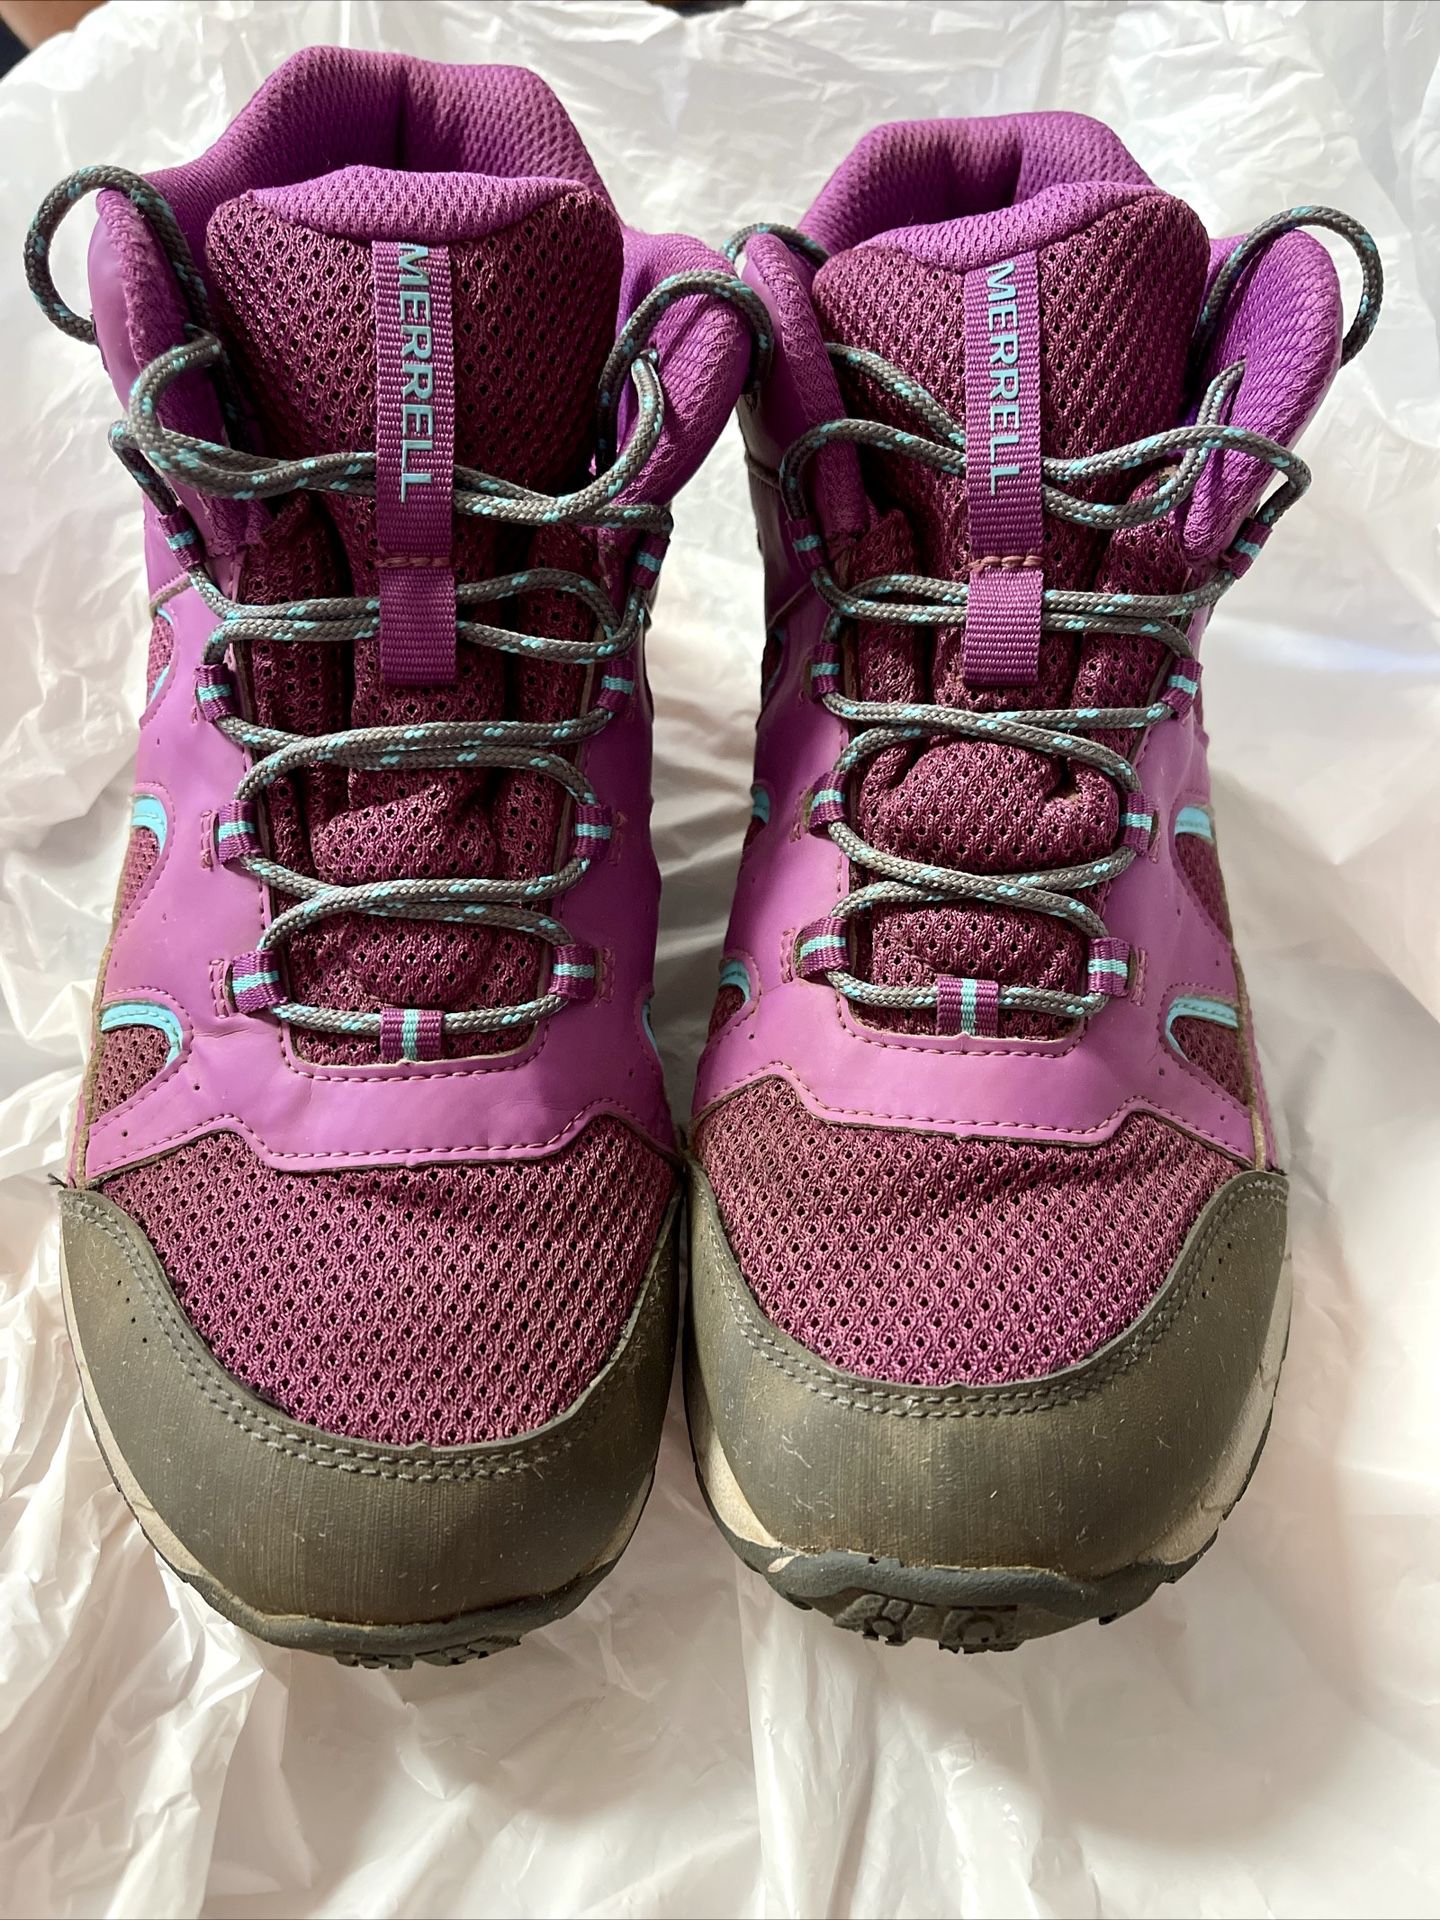 Merrell Women's Oakcreek Mid Waterproof Hiking Boots in size 6M